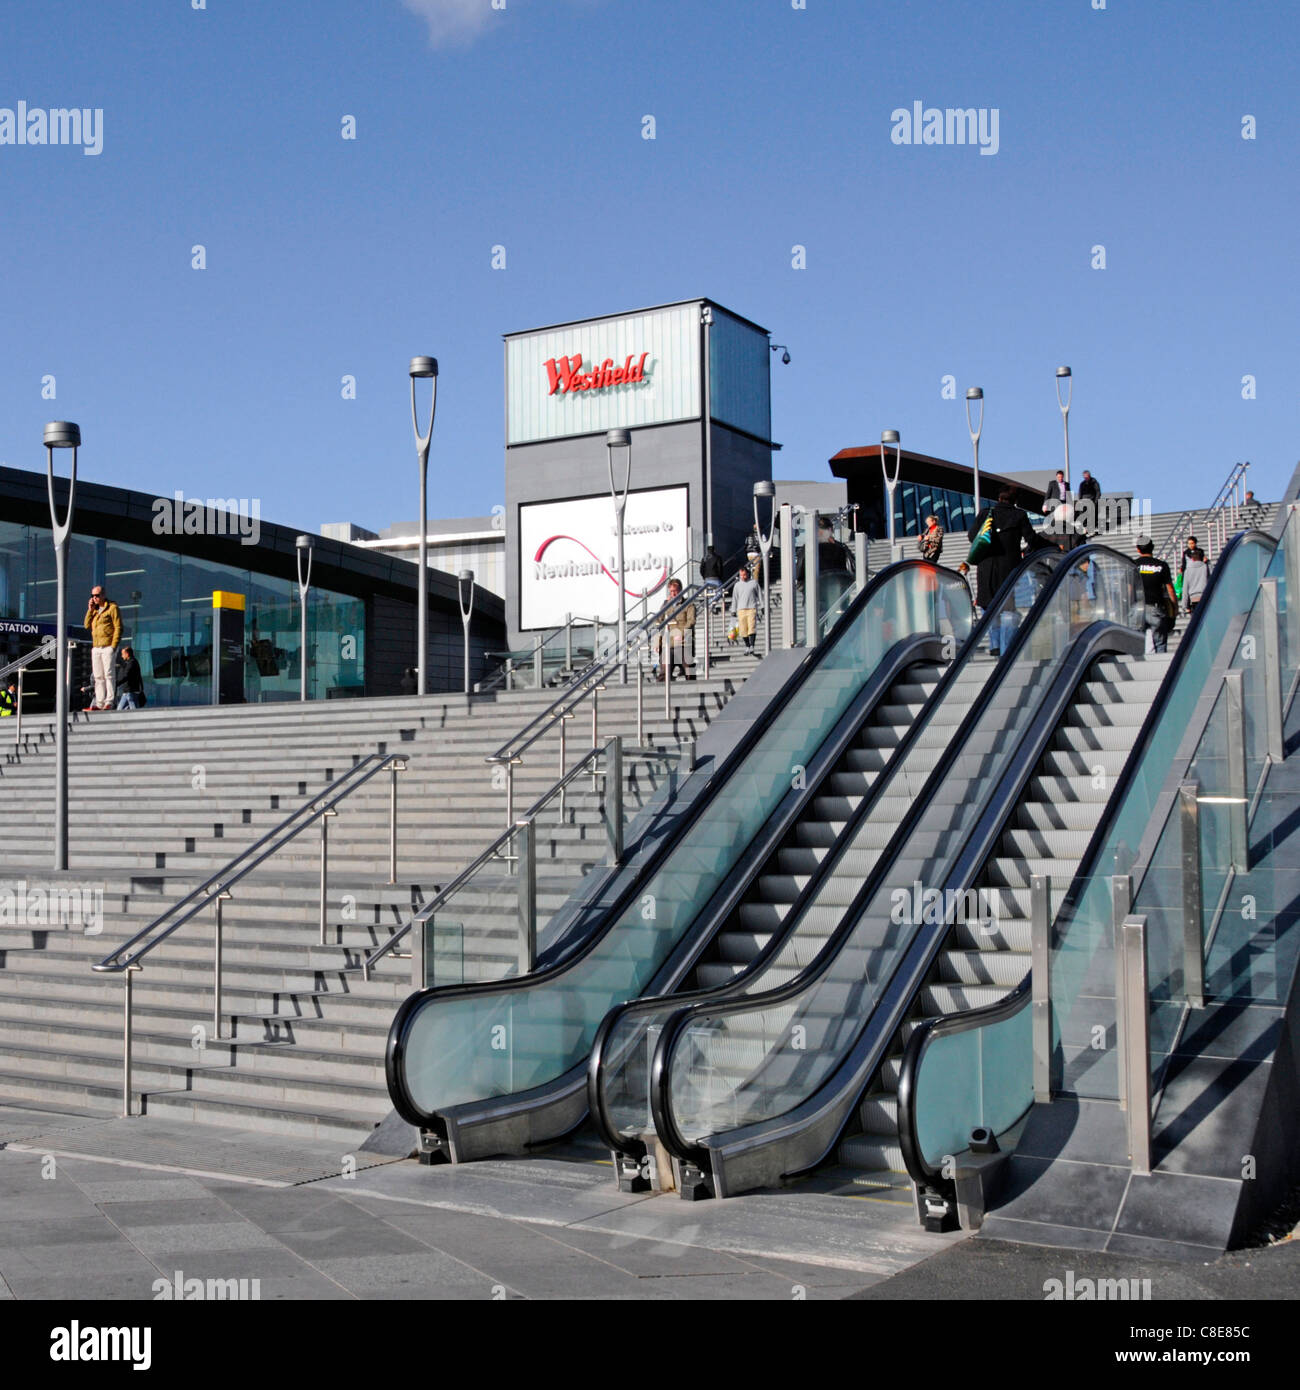 Tôt le matin voir l'escalier en pierre avec mains courantes et plein air des remontées mécaniques menant aux centres commerciaux centre commercial Westfield à Stratford Newham East London England UK Banque D'Images